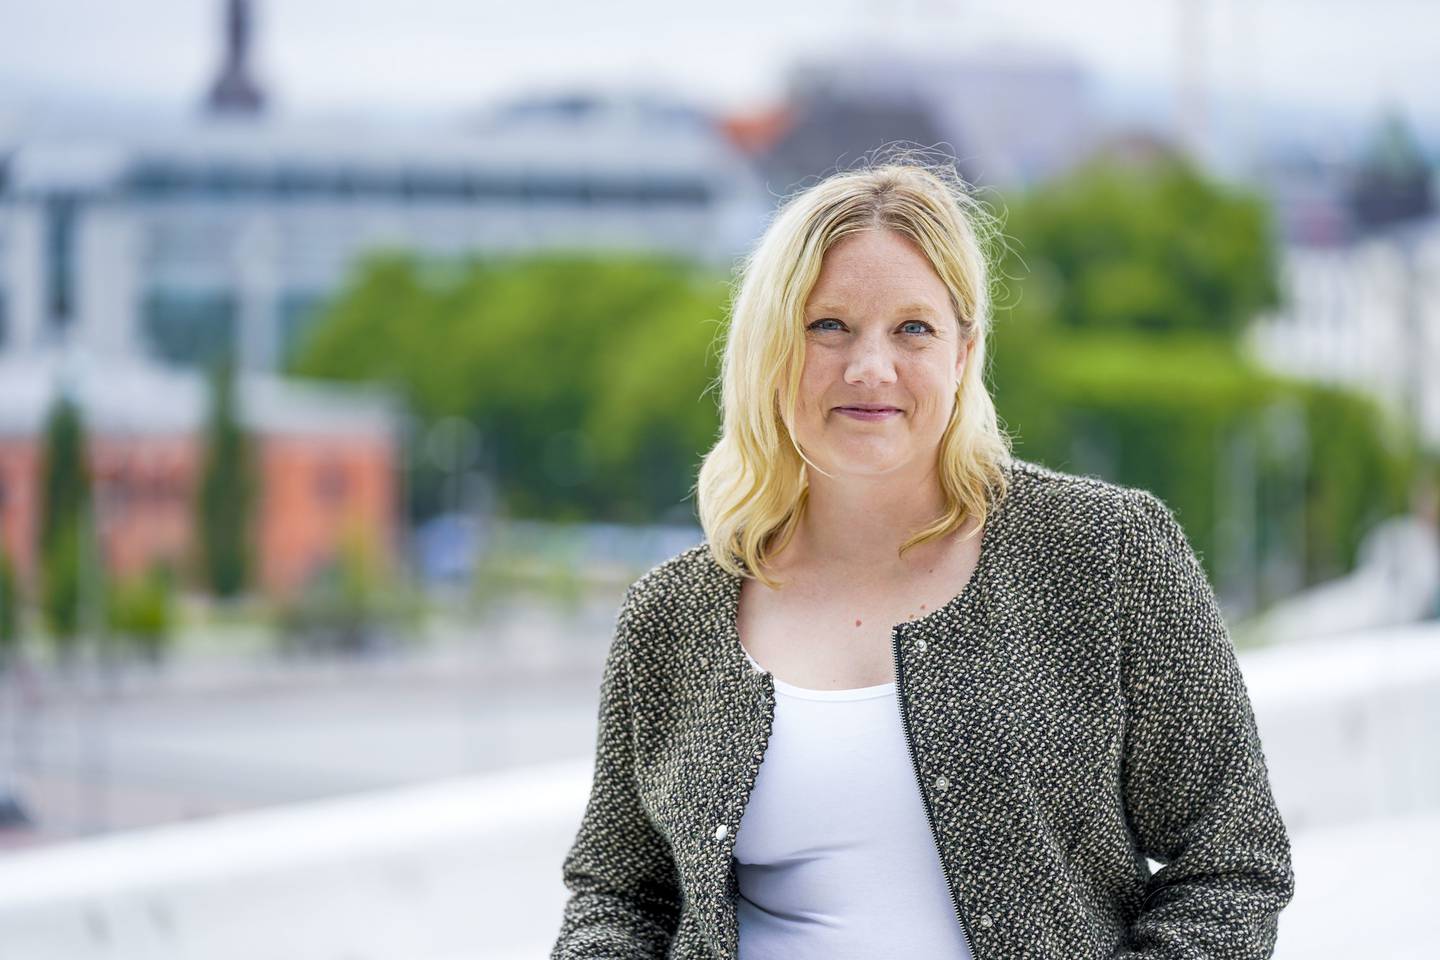 Oslo 20220609. 
Aina Stenersen er FrPs 3. kandidat til stortingsvalget i Oslo. Hun er også leder av Helse- og sosialutvalget i Oslo kommune.
Foto: Lise Åserud / NTB